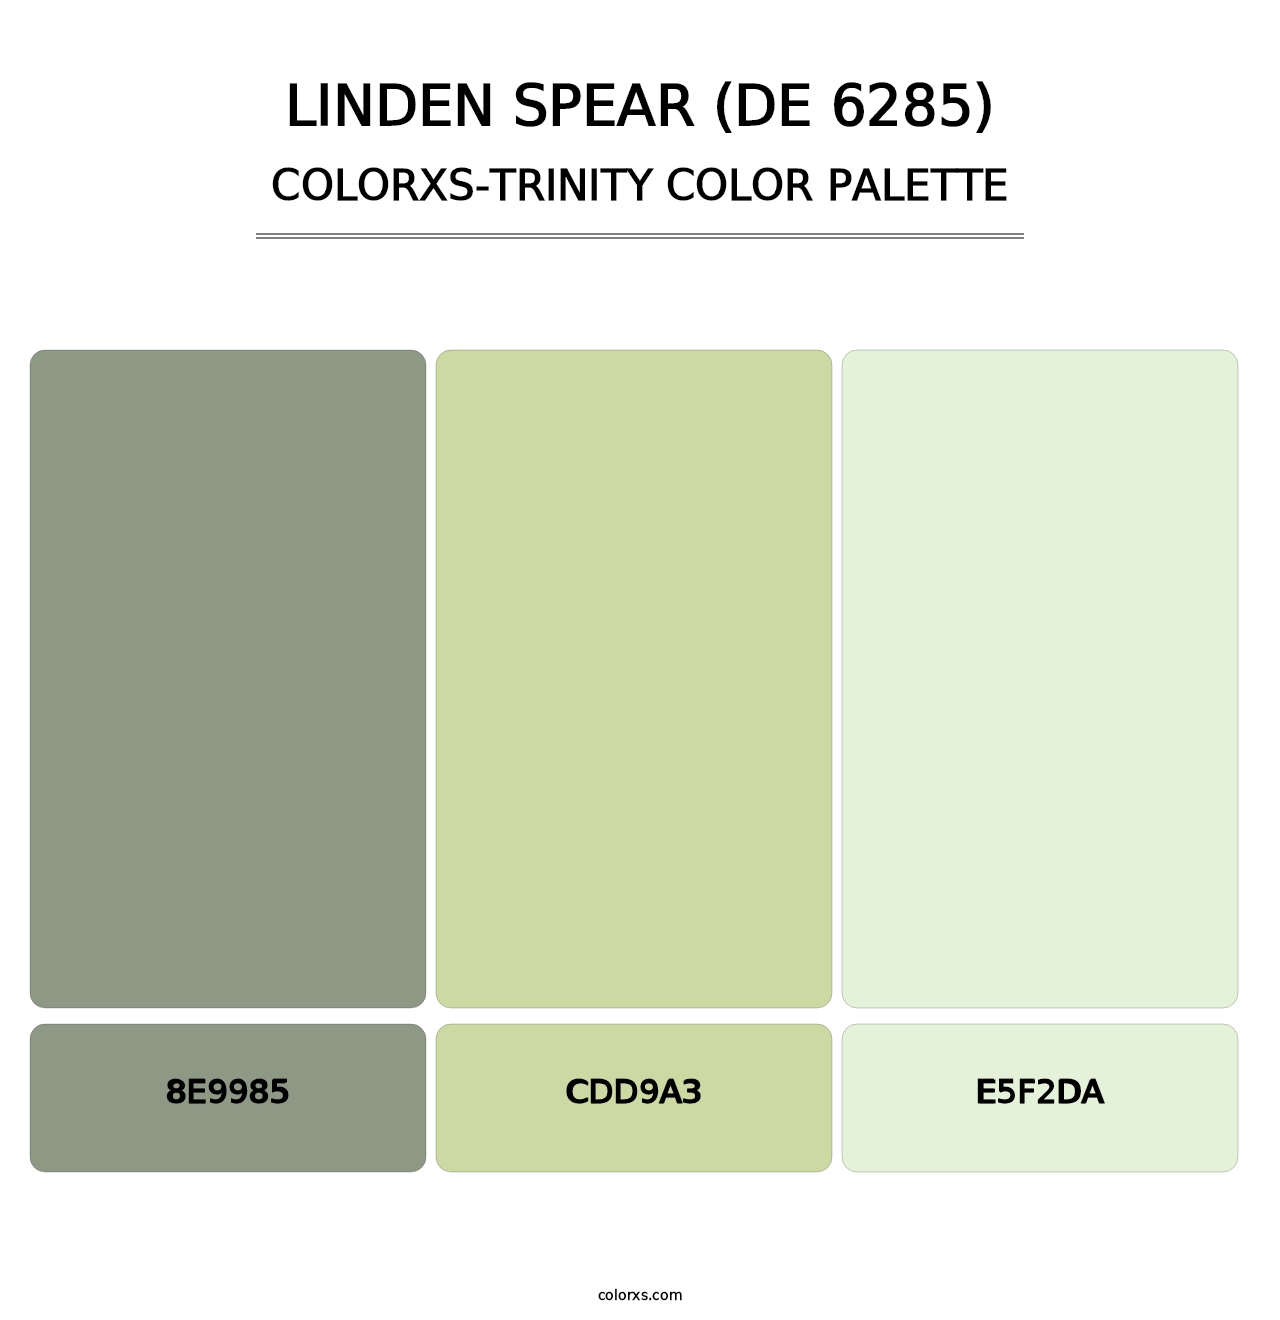 Linden Spear (DE 6285) - Colorxs Trinity Palette